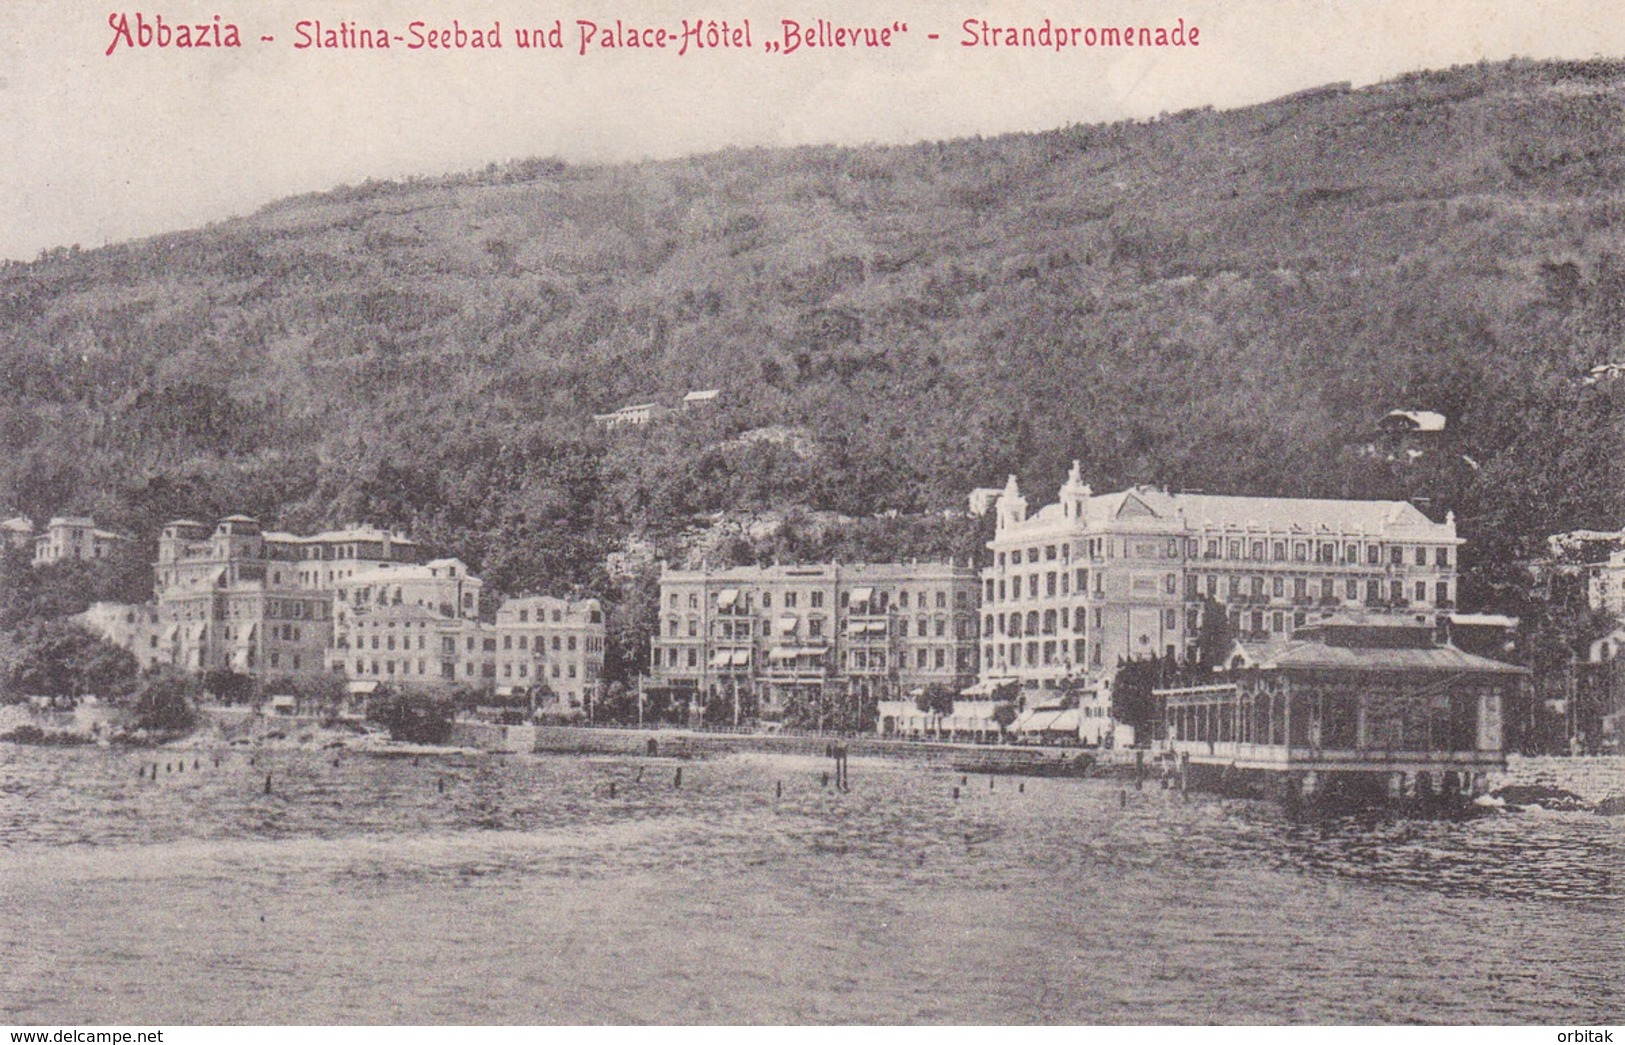 Opatija (Abbazia) * Slatina Seebad Und Palace Hotel Bellevue, Strandpromenade * Kroatien * AK1332 - Kroatien